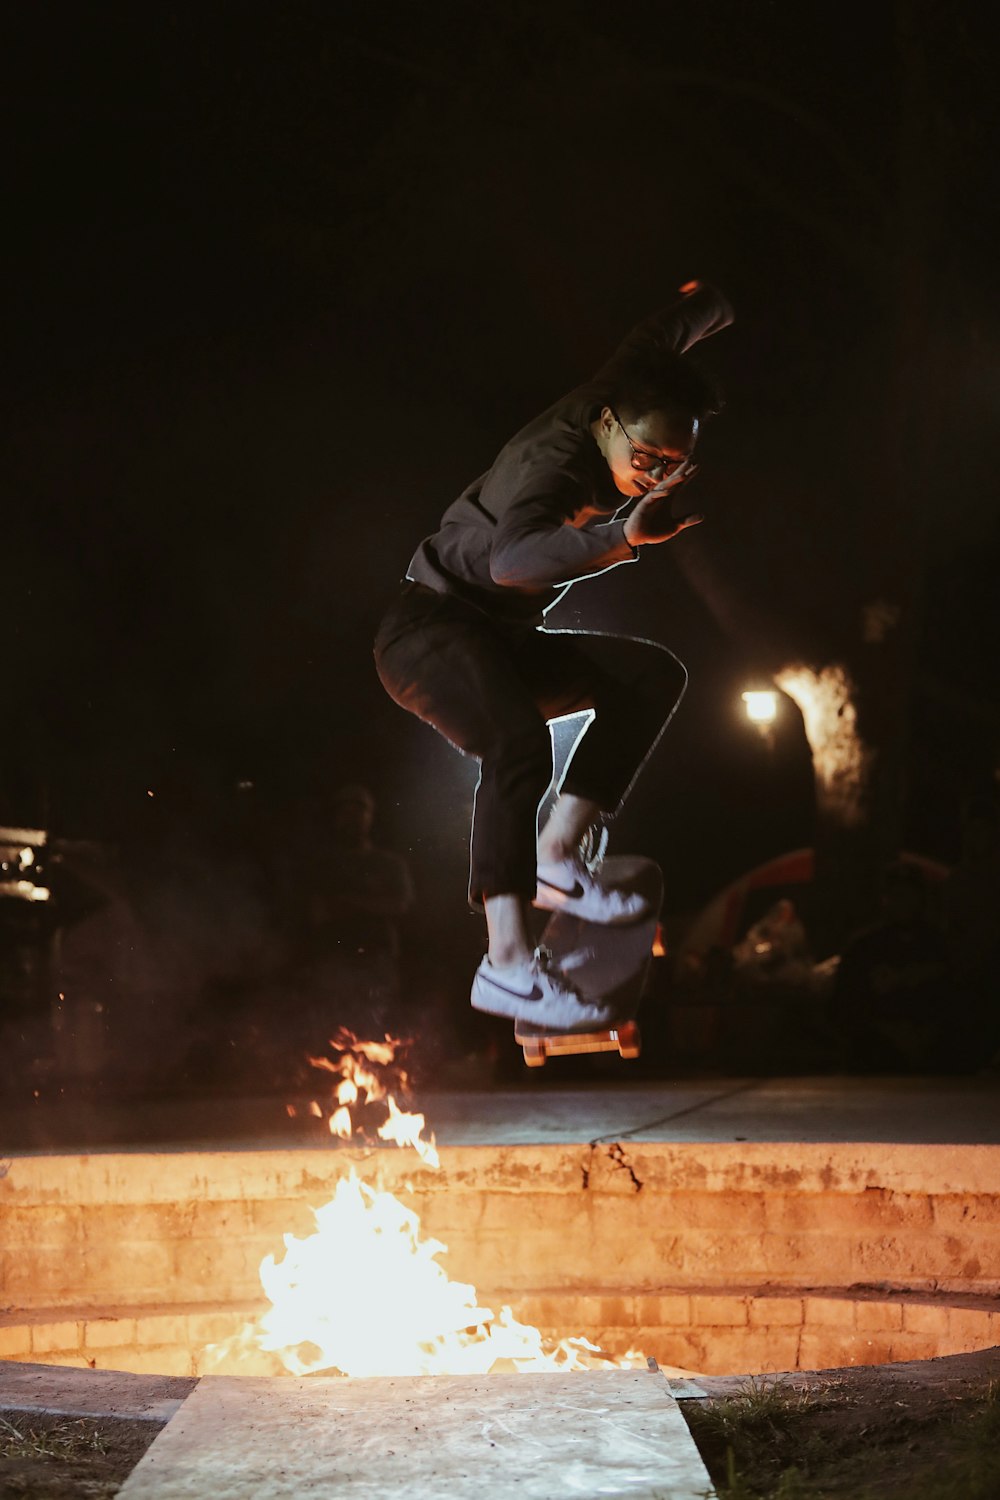 Mann in schwarzer Jacke beim Skateboarden in der Nähe des Feuers